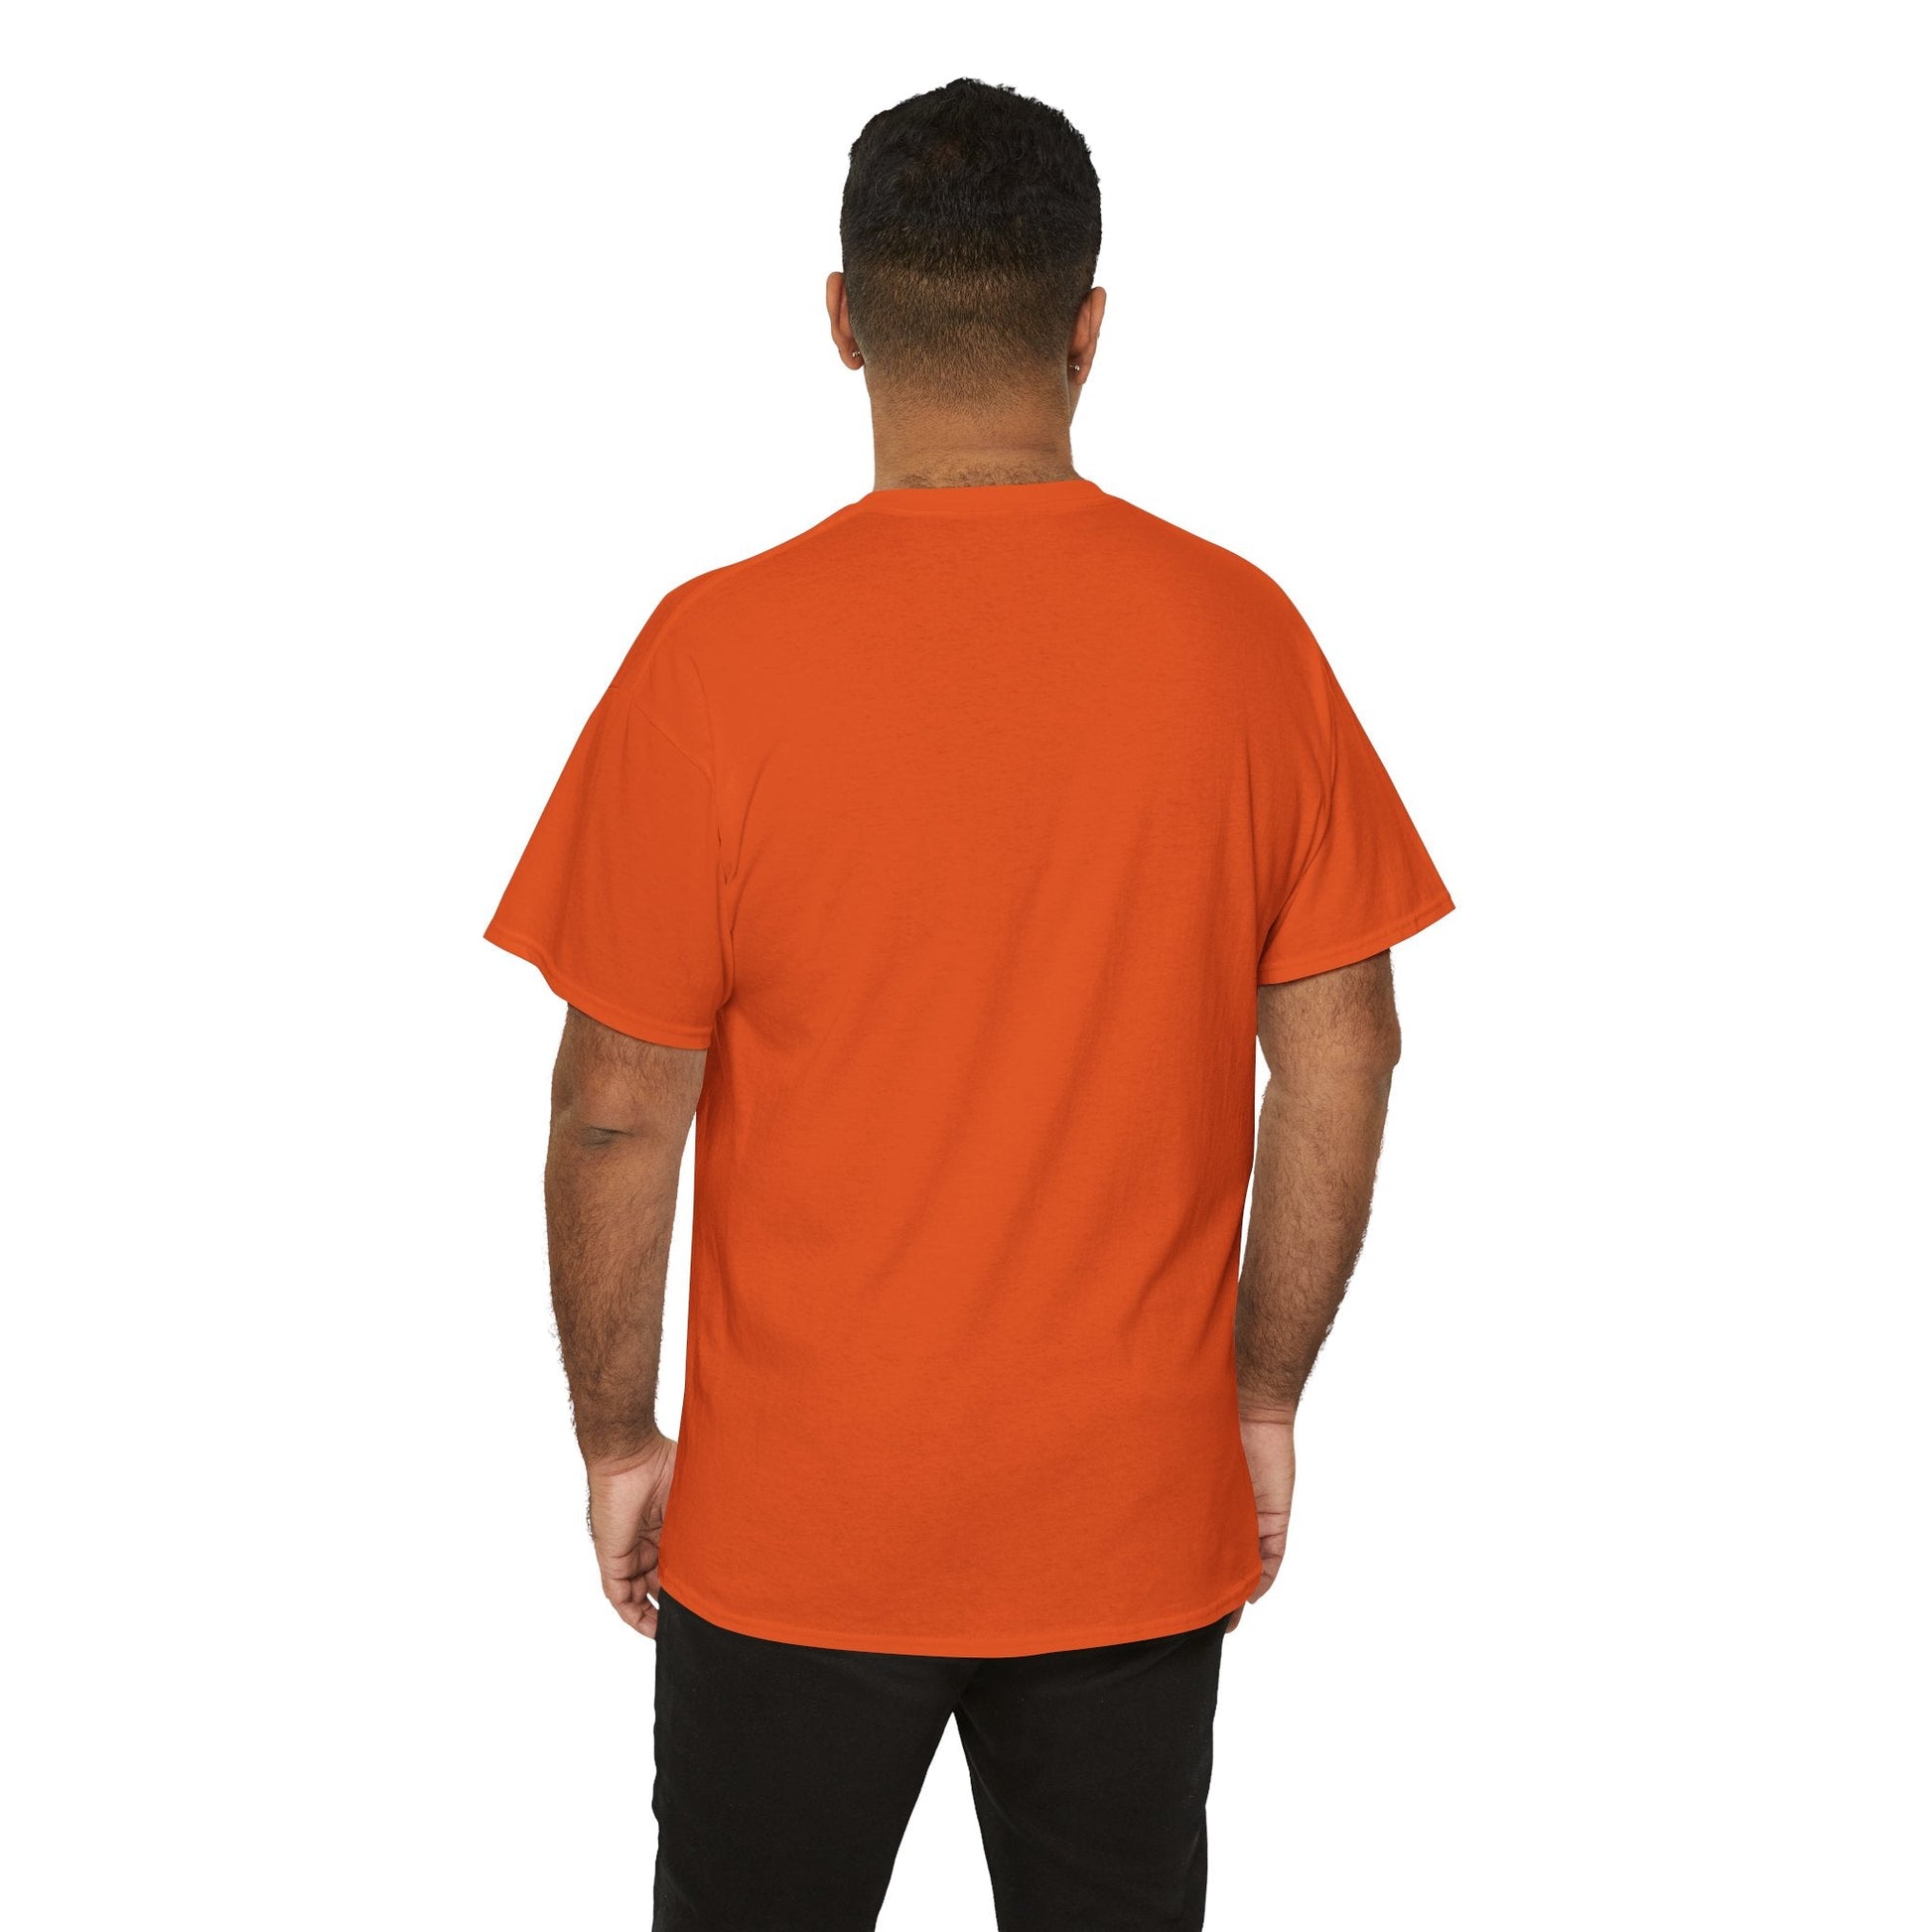 Tang Orange Drink Logo T-Shirt - RetroTeeShop